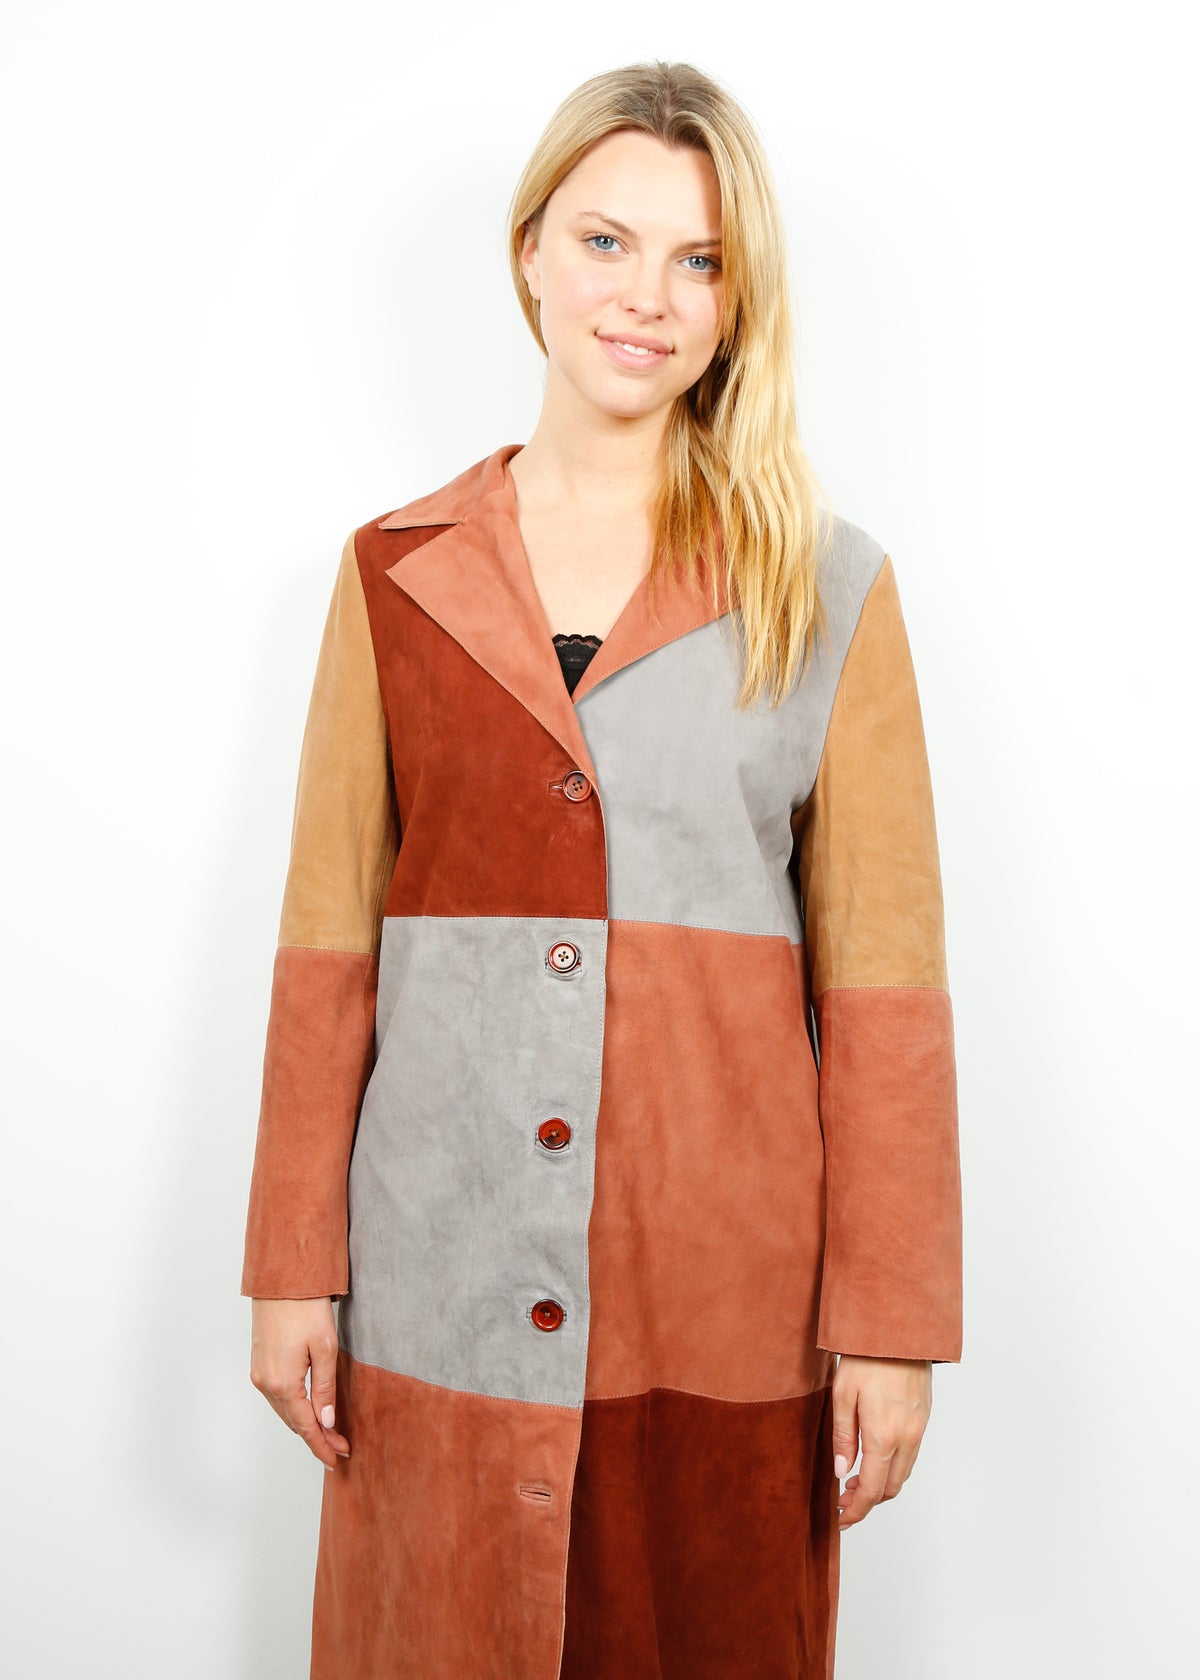 RIXO Lindsey Coat in Patchwork Autumn